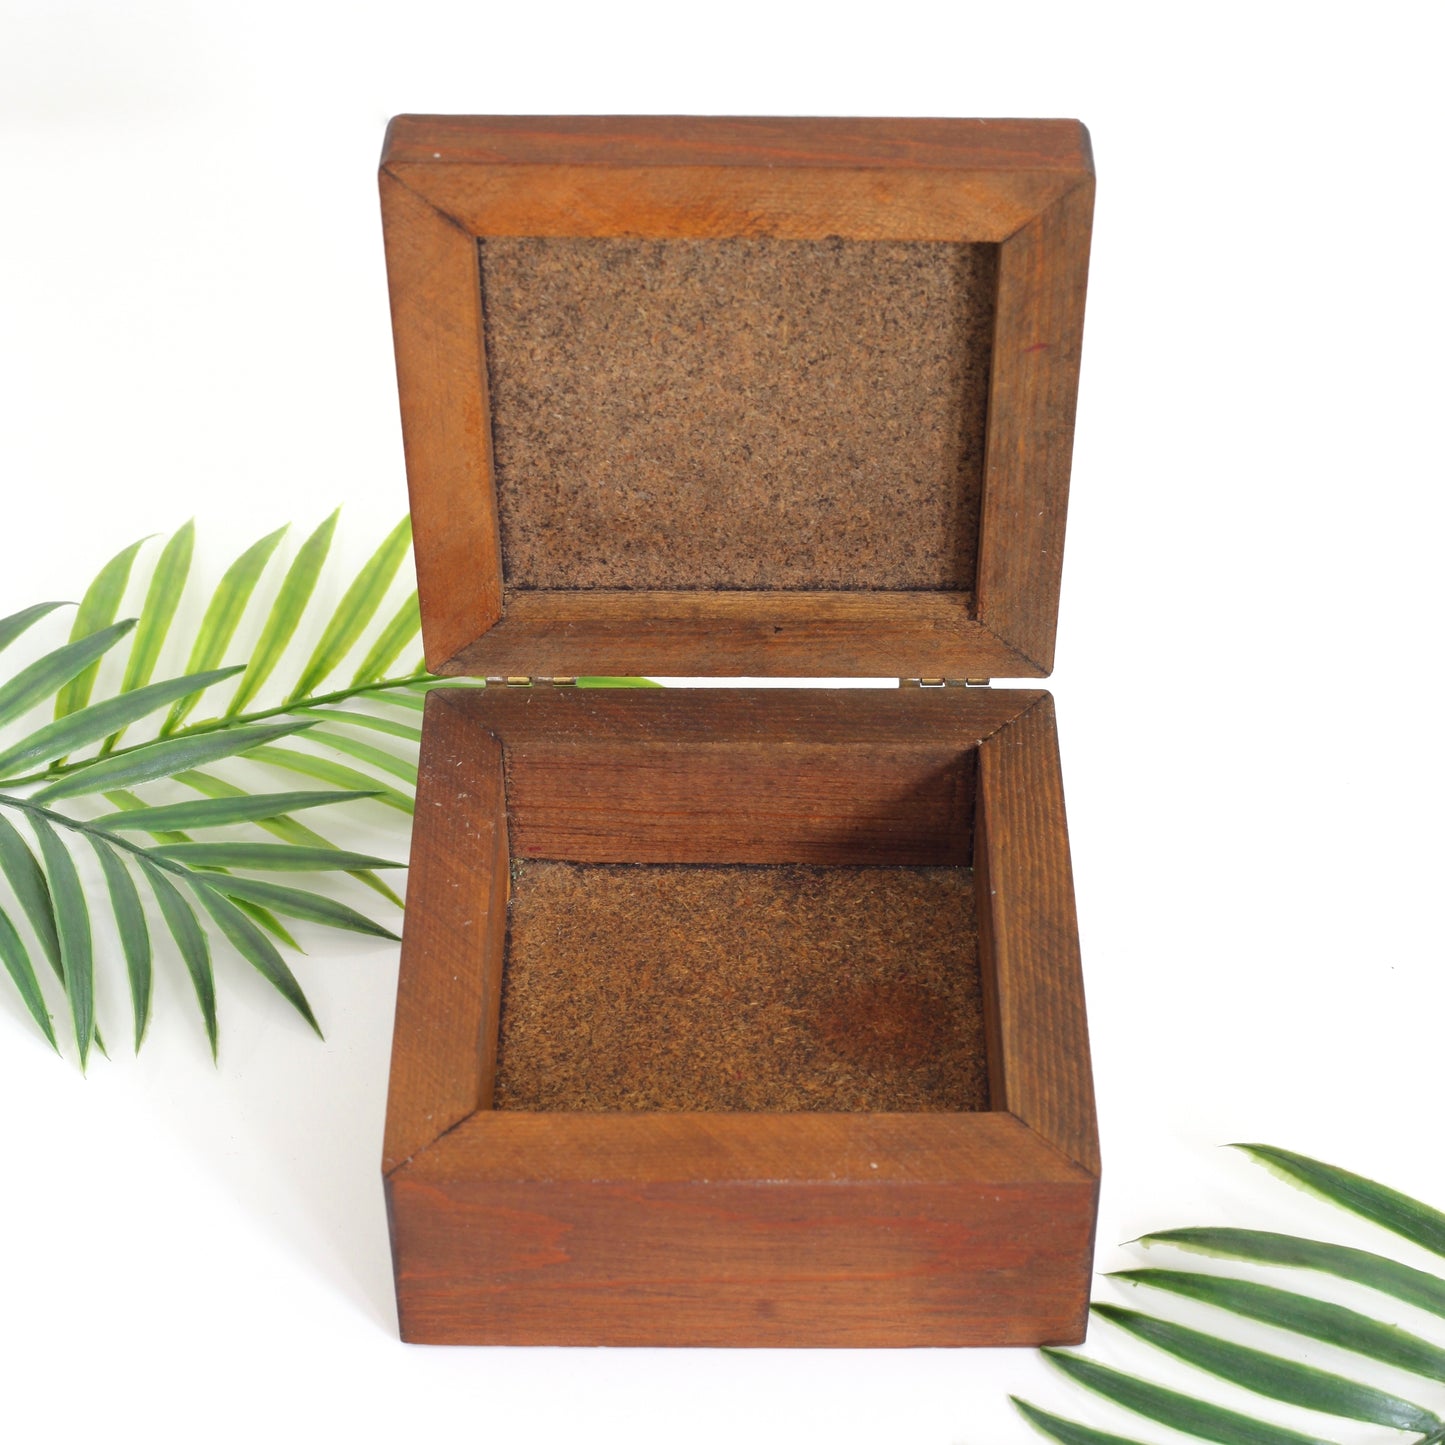 SOLD - Vintage Wood & Ceramic Tile Trinket Box